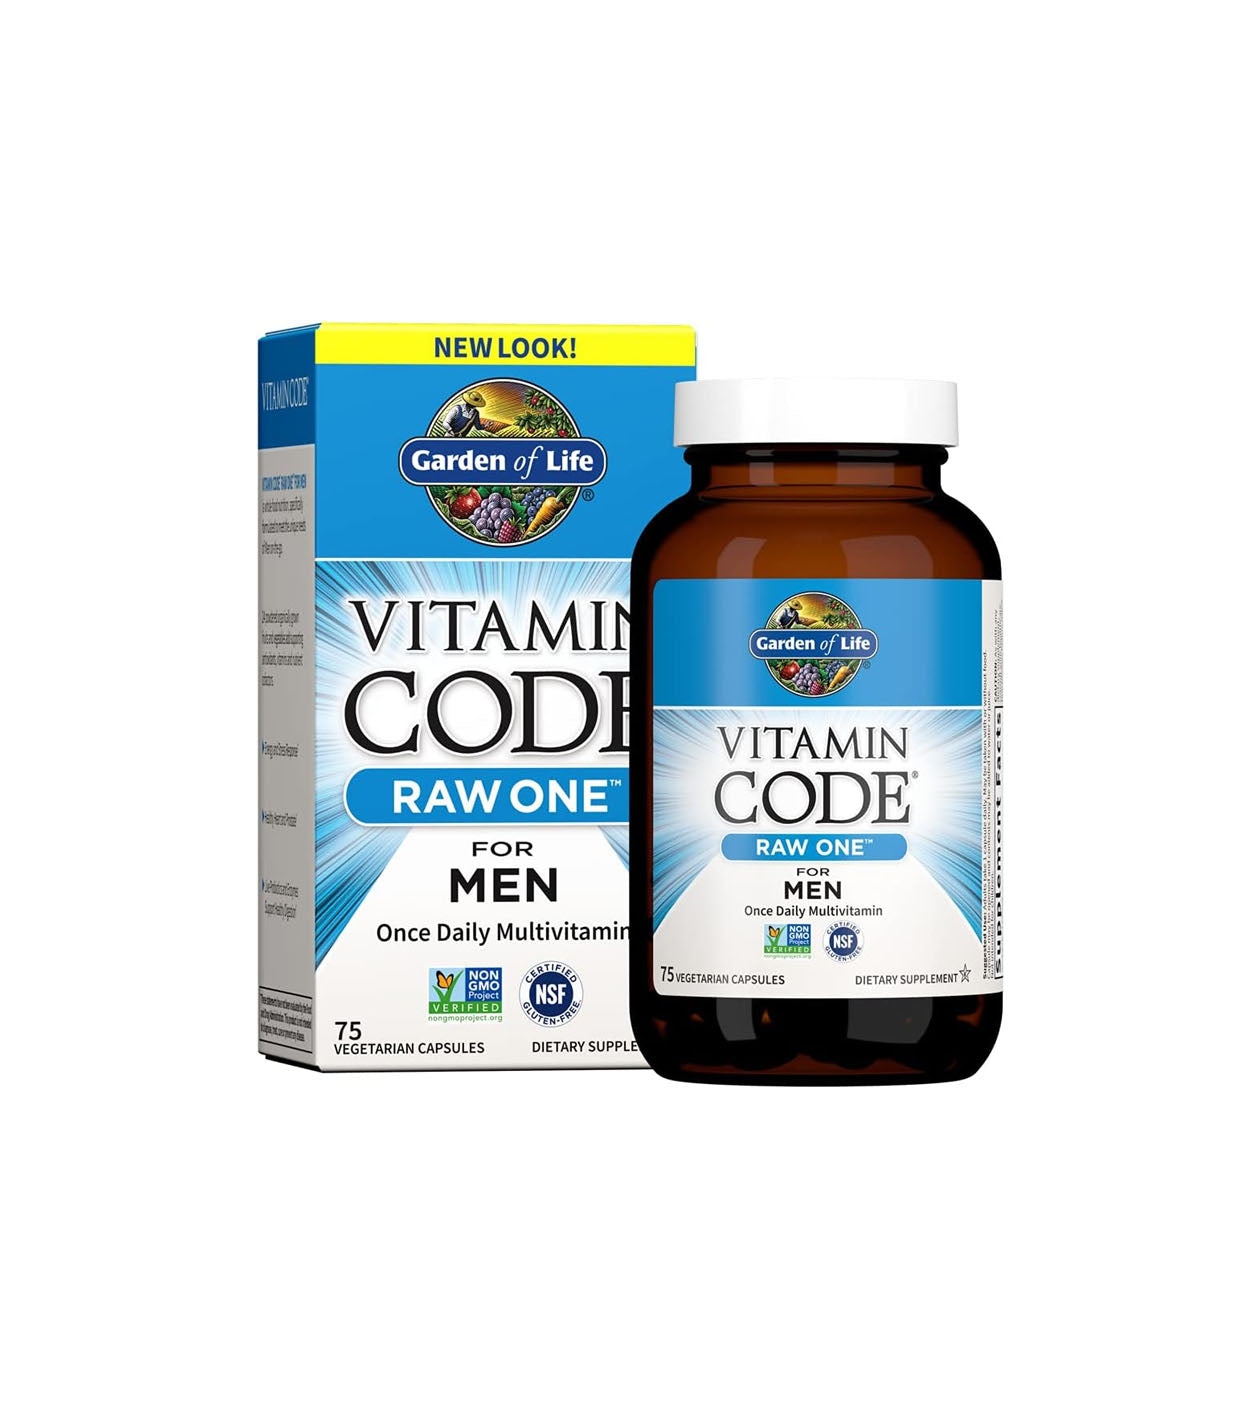 Garden of Life Multivitamínico para hombres, código de vitamina crudo, 75 cápsulas